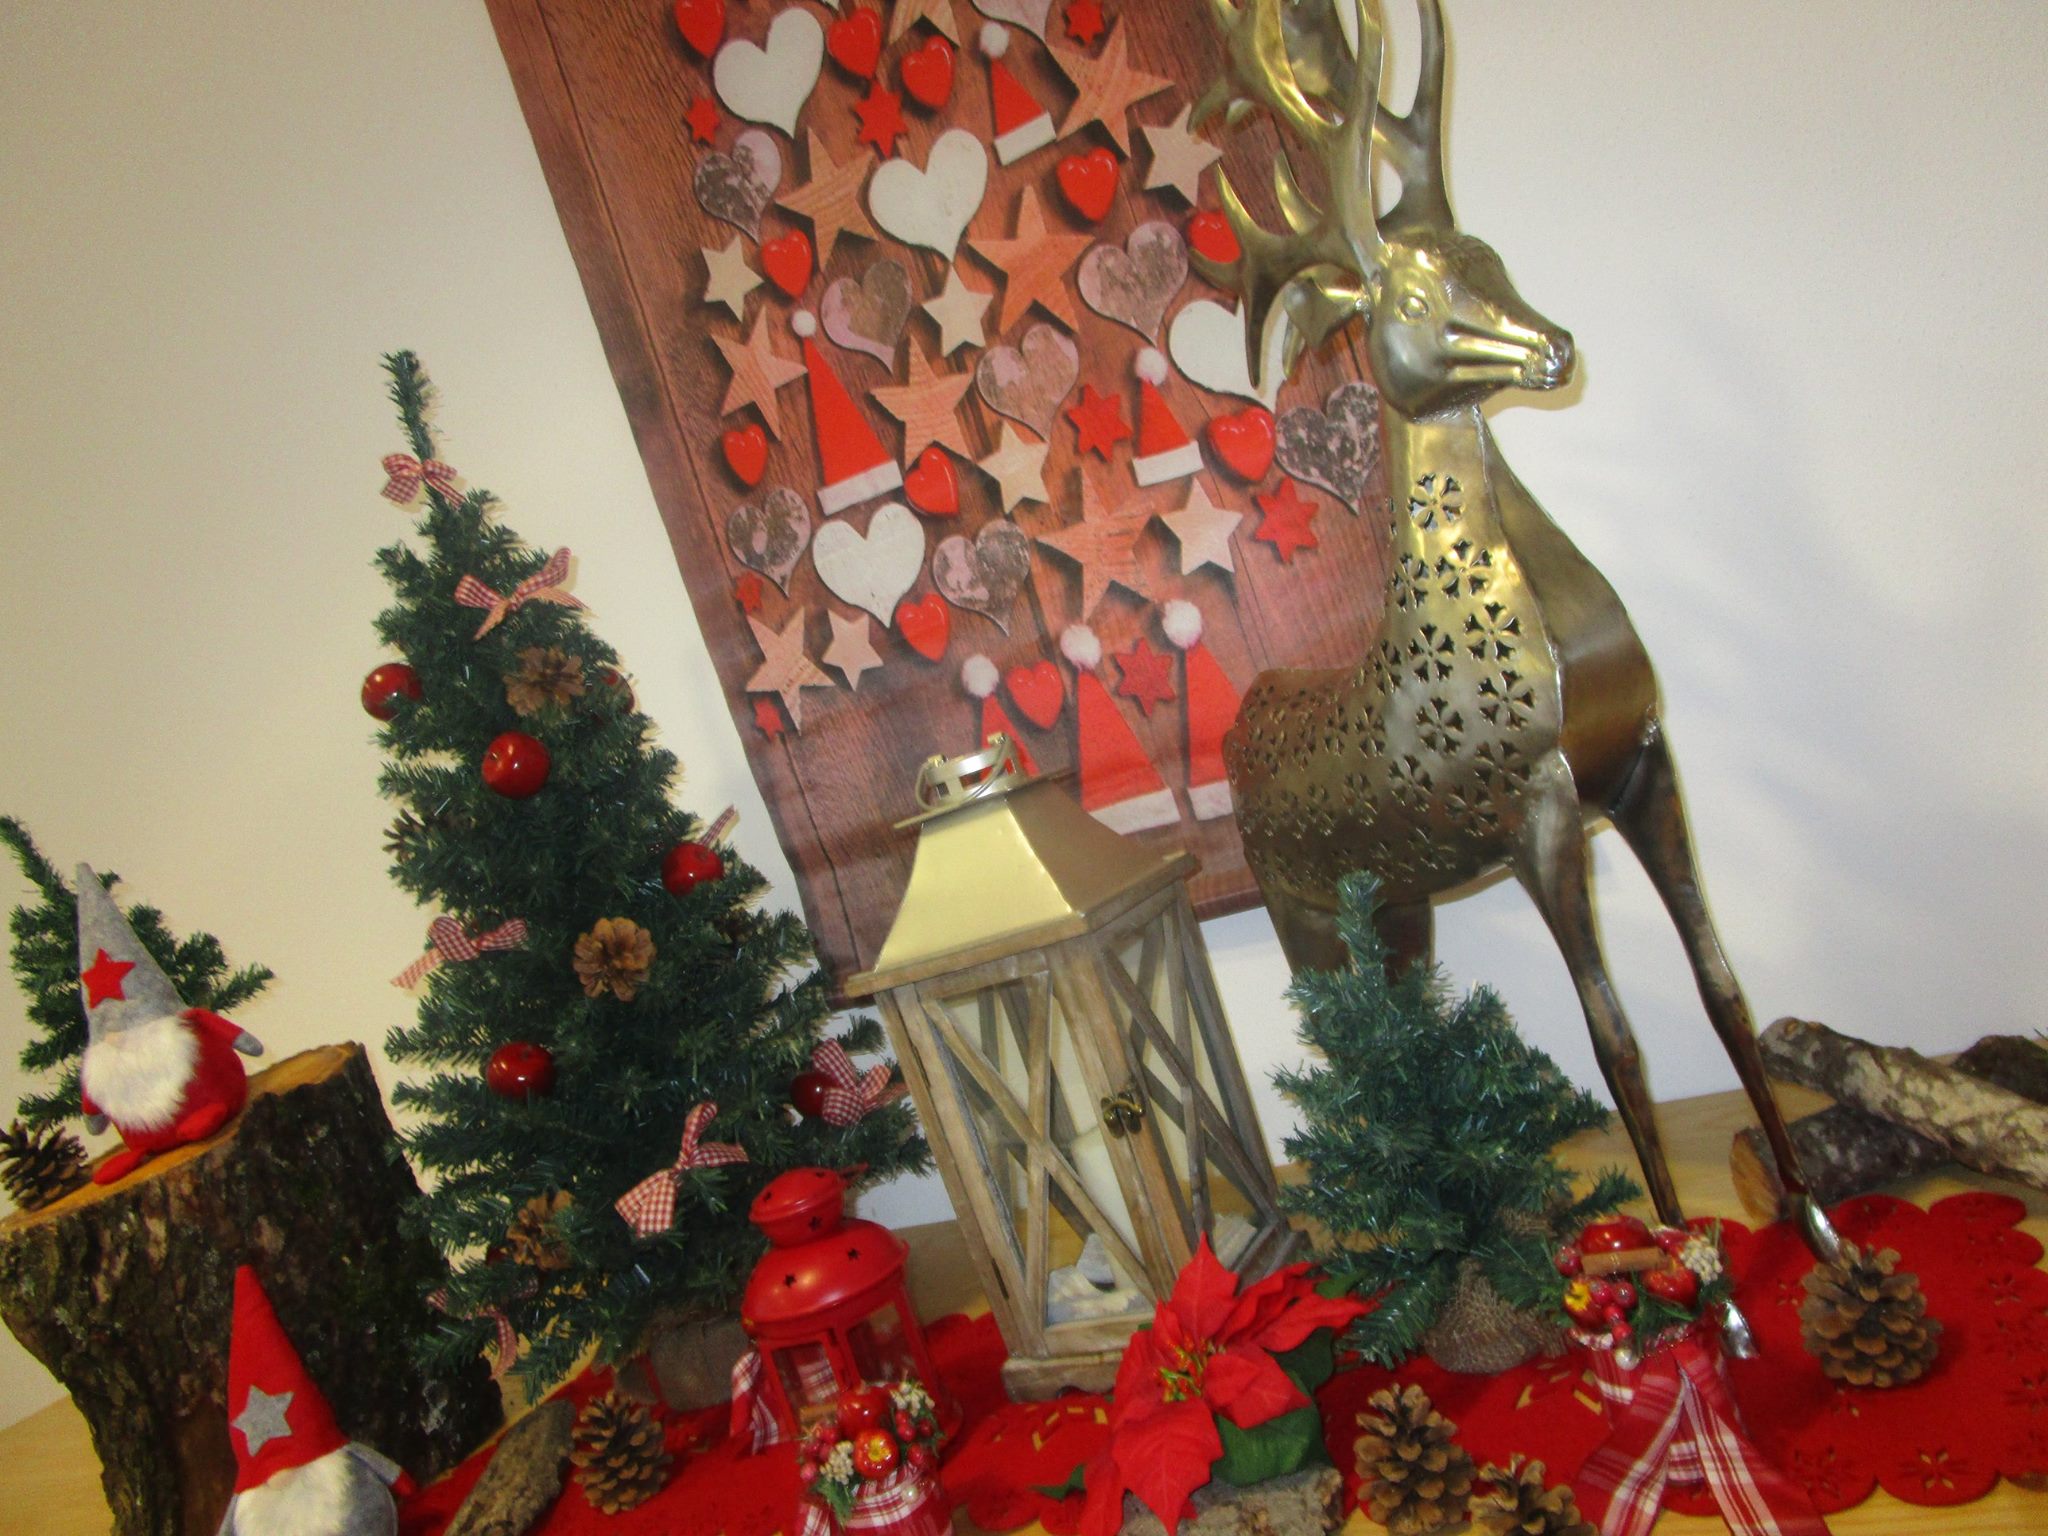 Weihnachtliche Dekoration mit silbernen Hirsch, Laternen, Naturmaterialien und Tannenbäumen